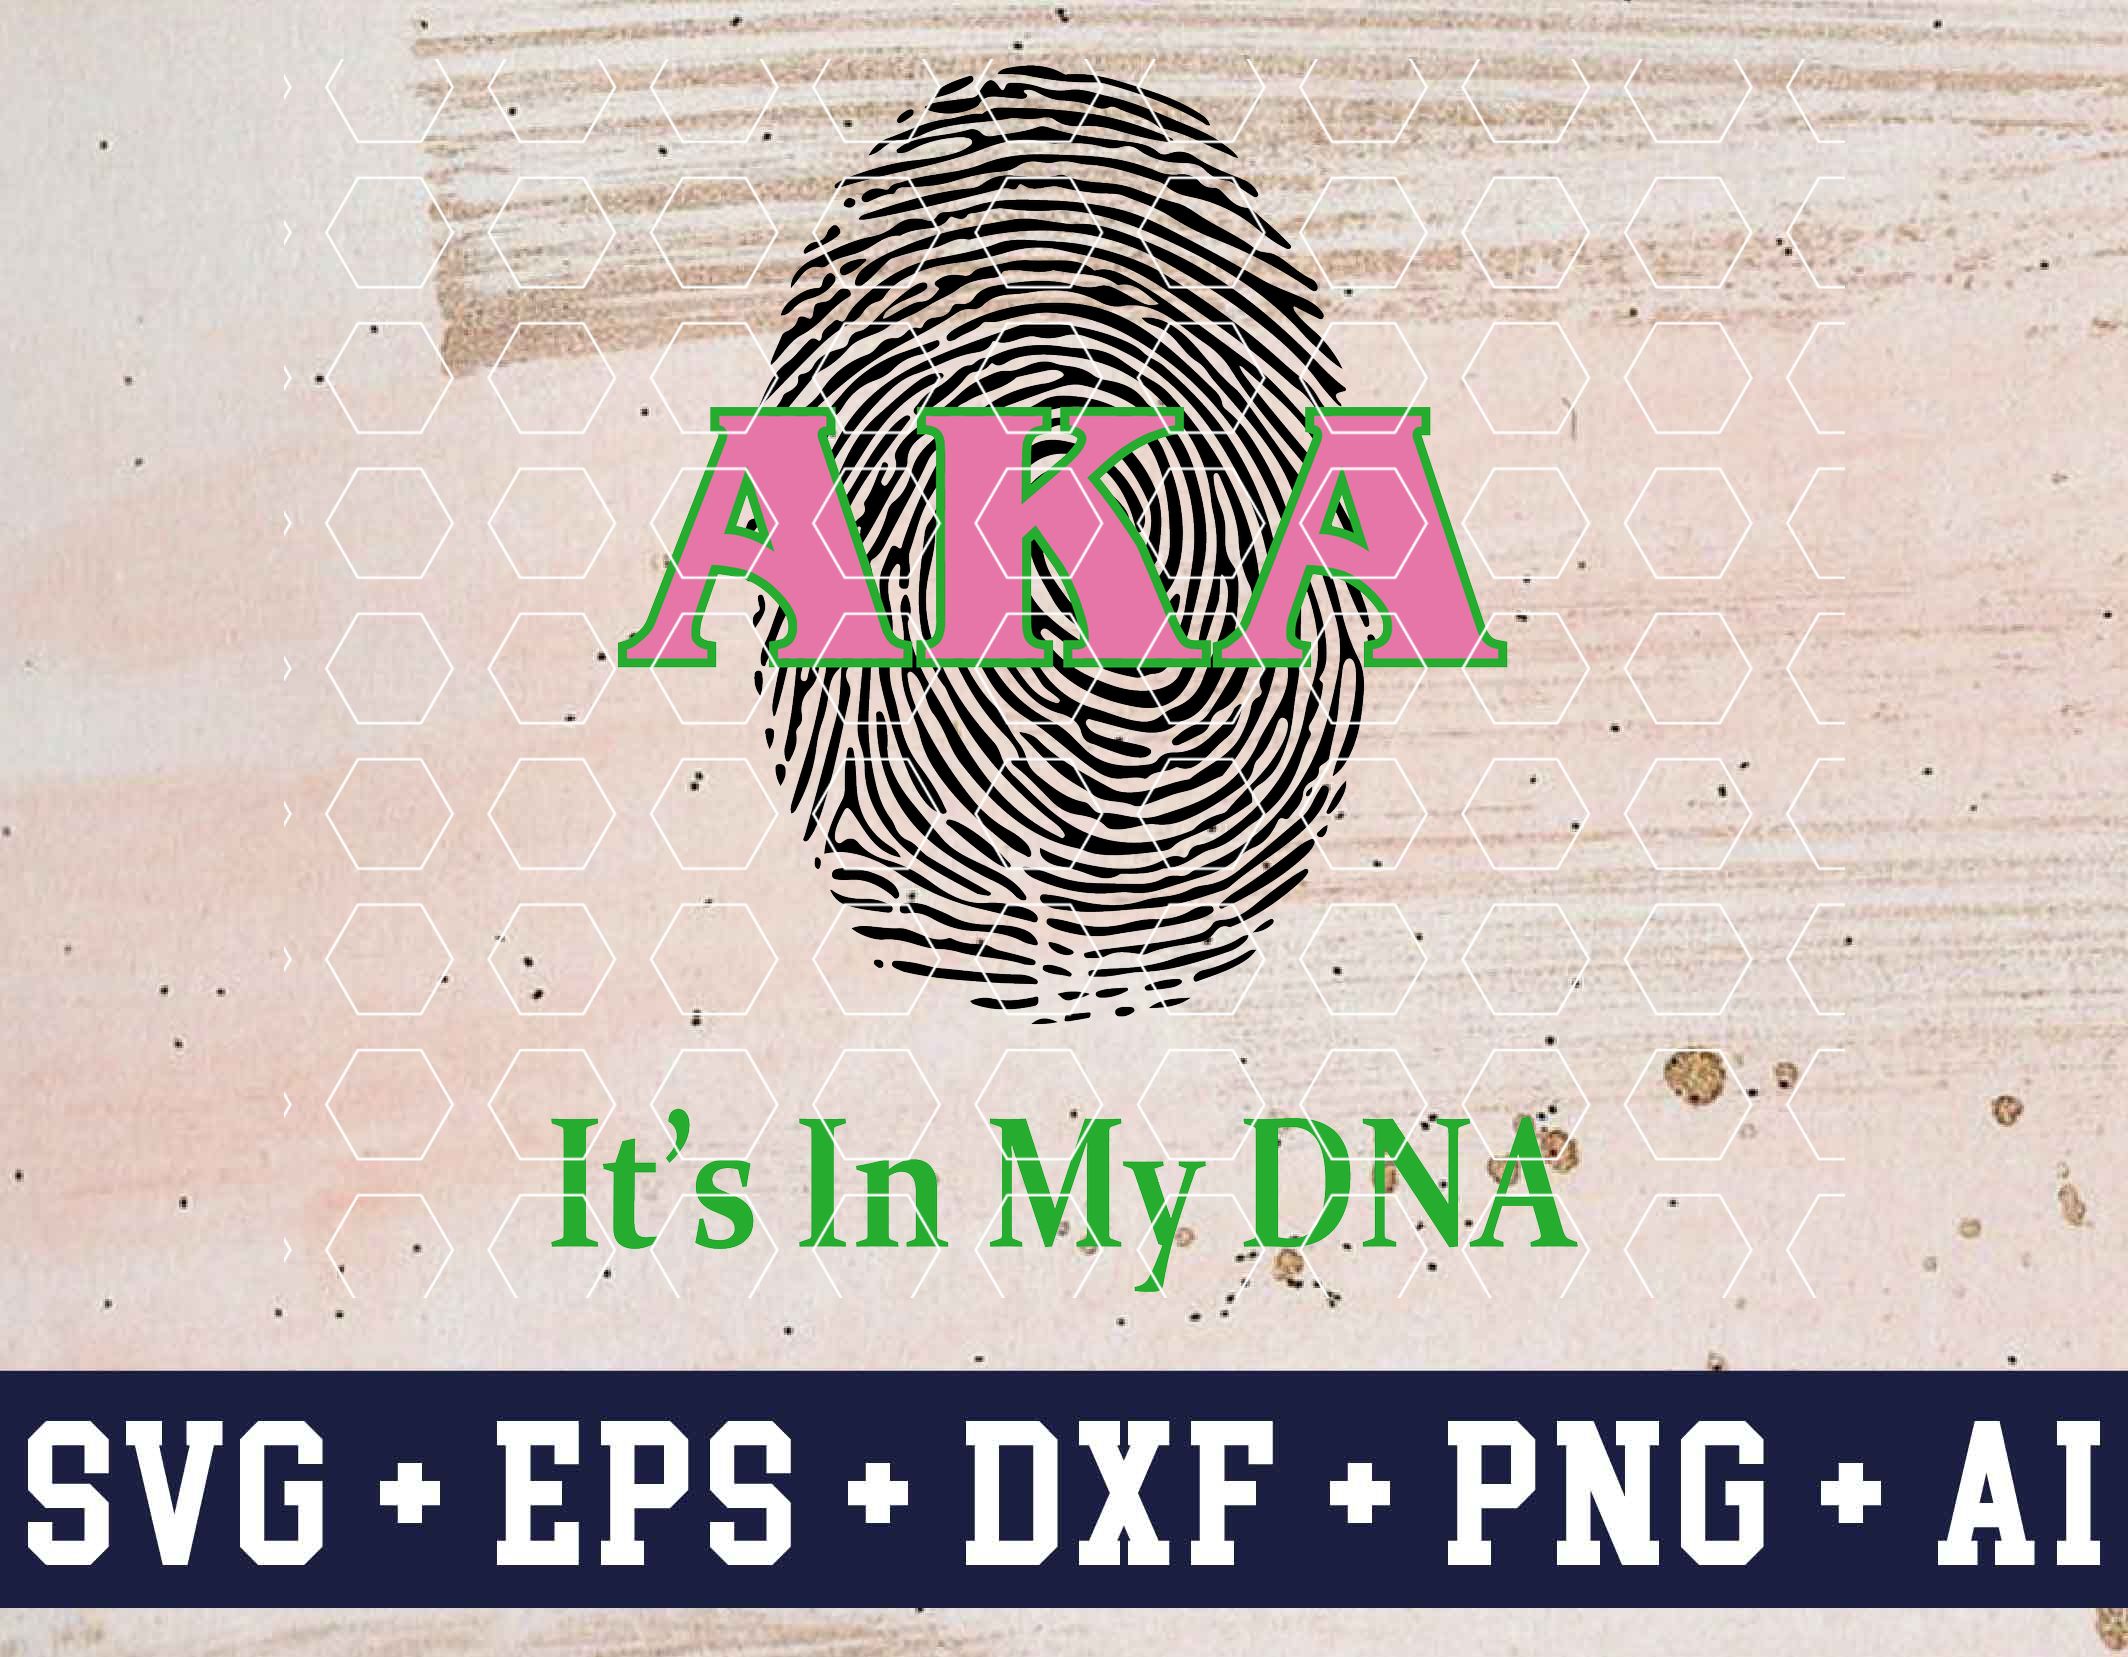 5f5af62a618d9cd3c59cJ 5 AKA it'sin my DNA svg, eps,dxf,png,ai